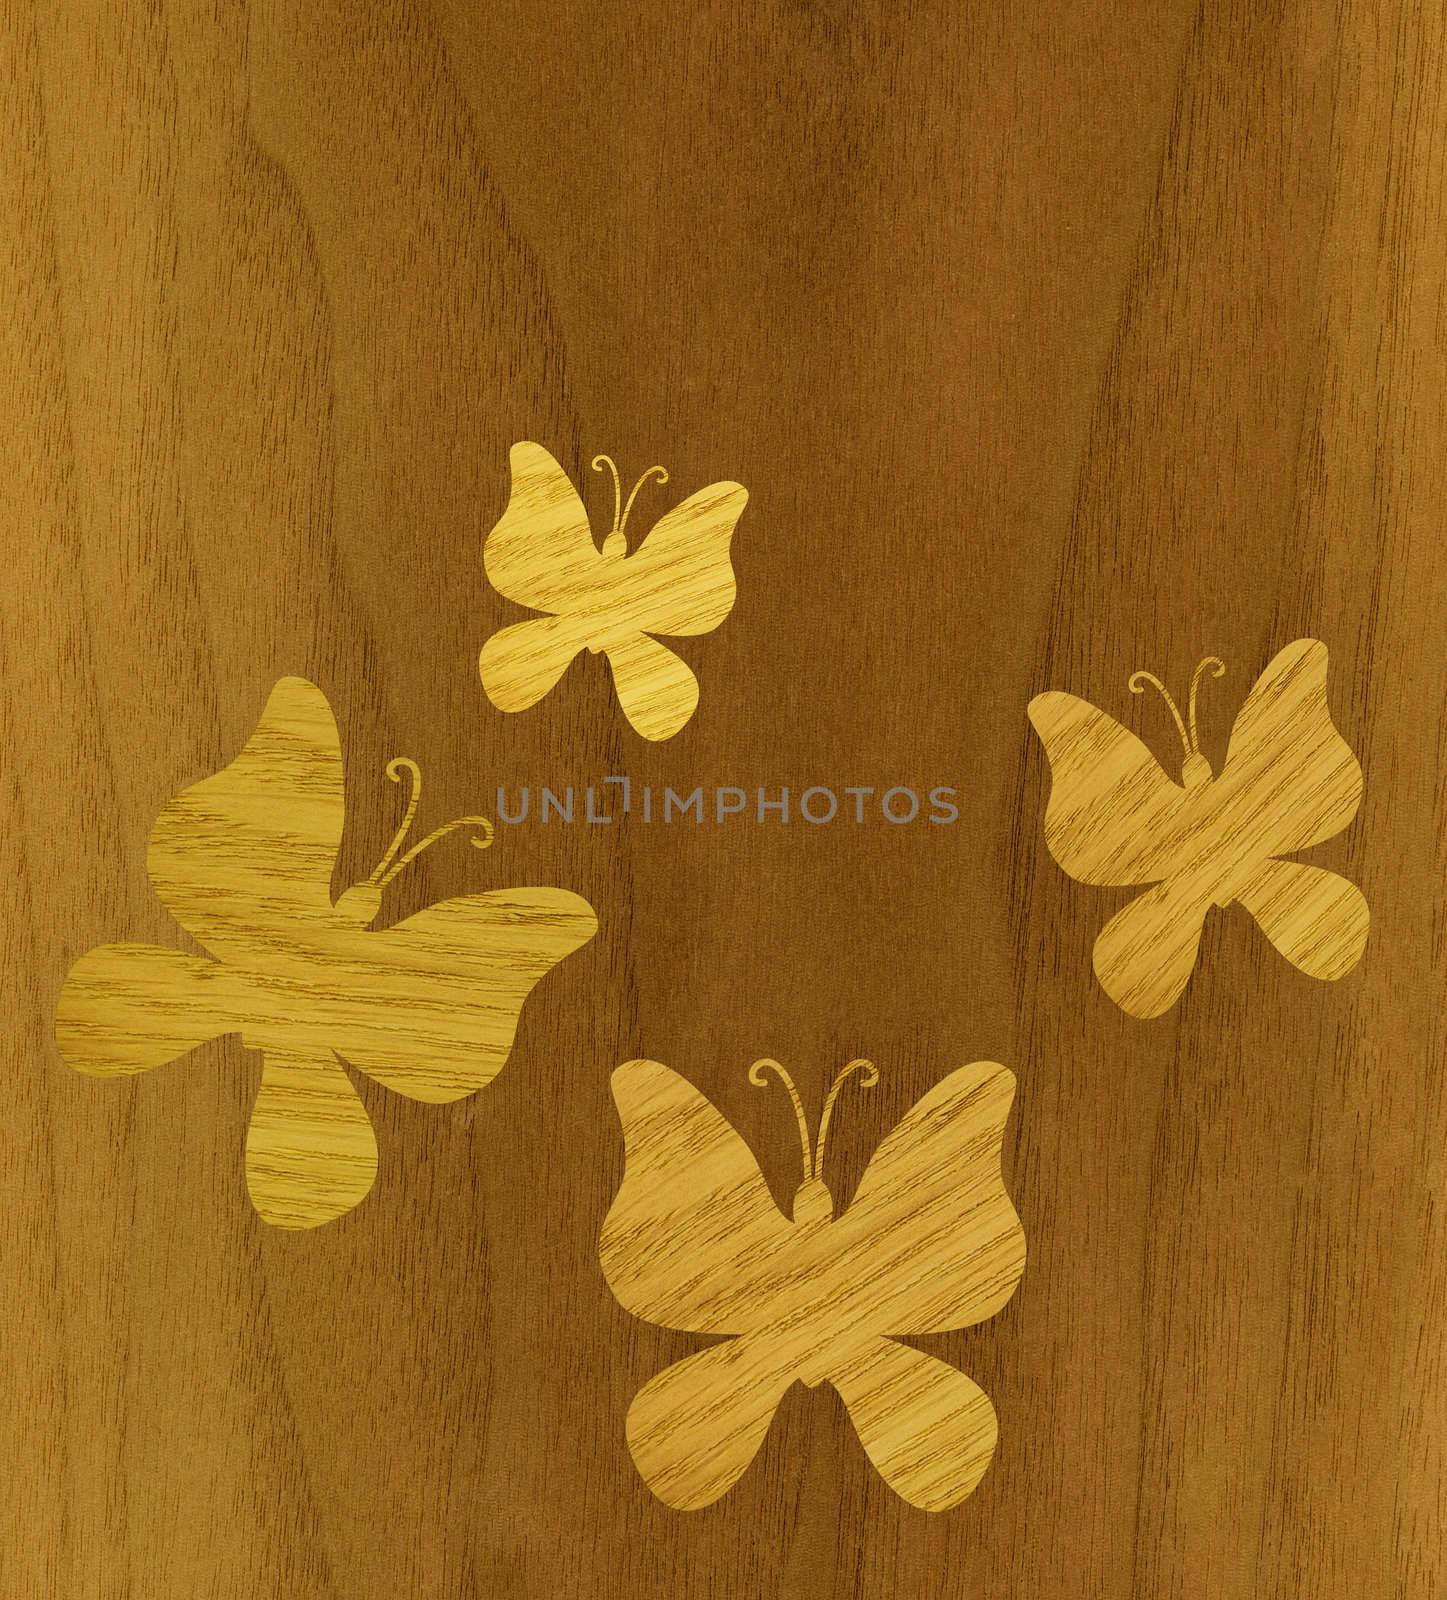 Butterflies of wood veneer by alexcoolok